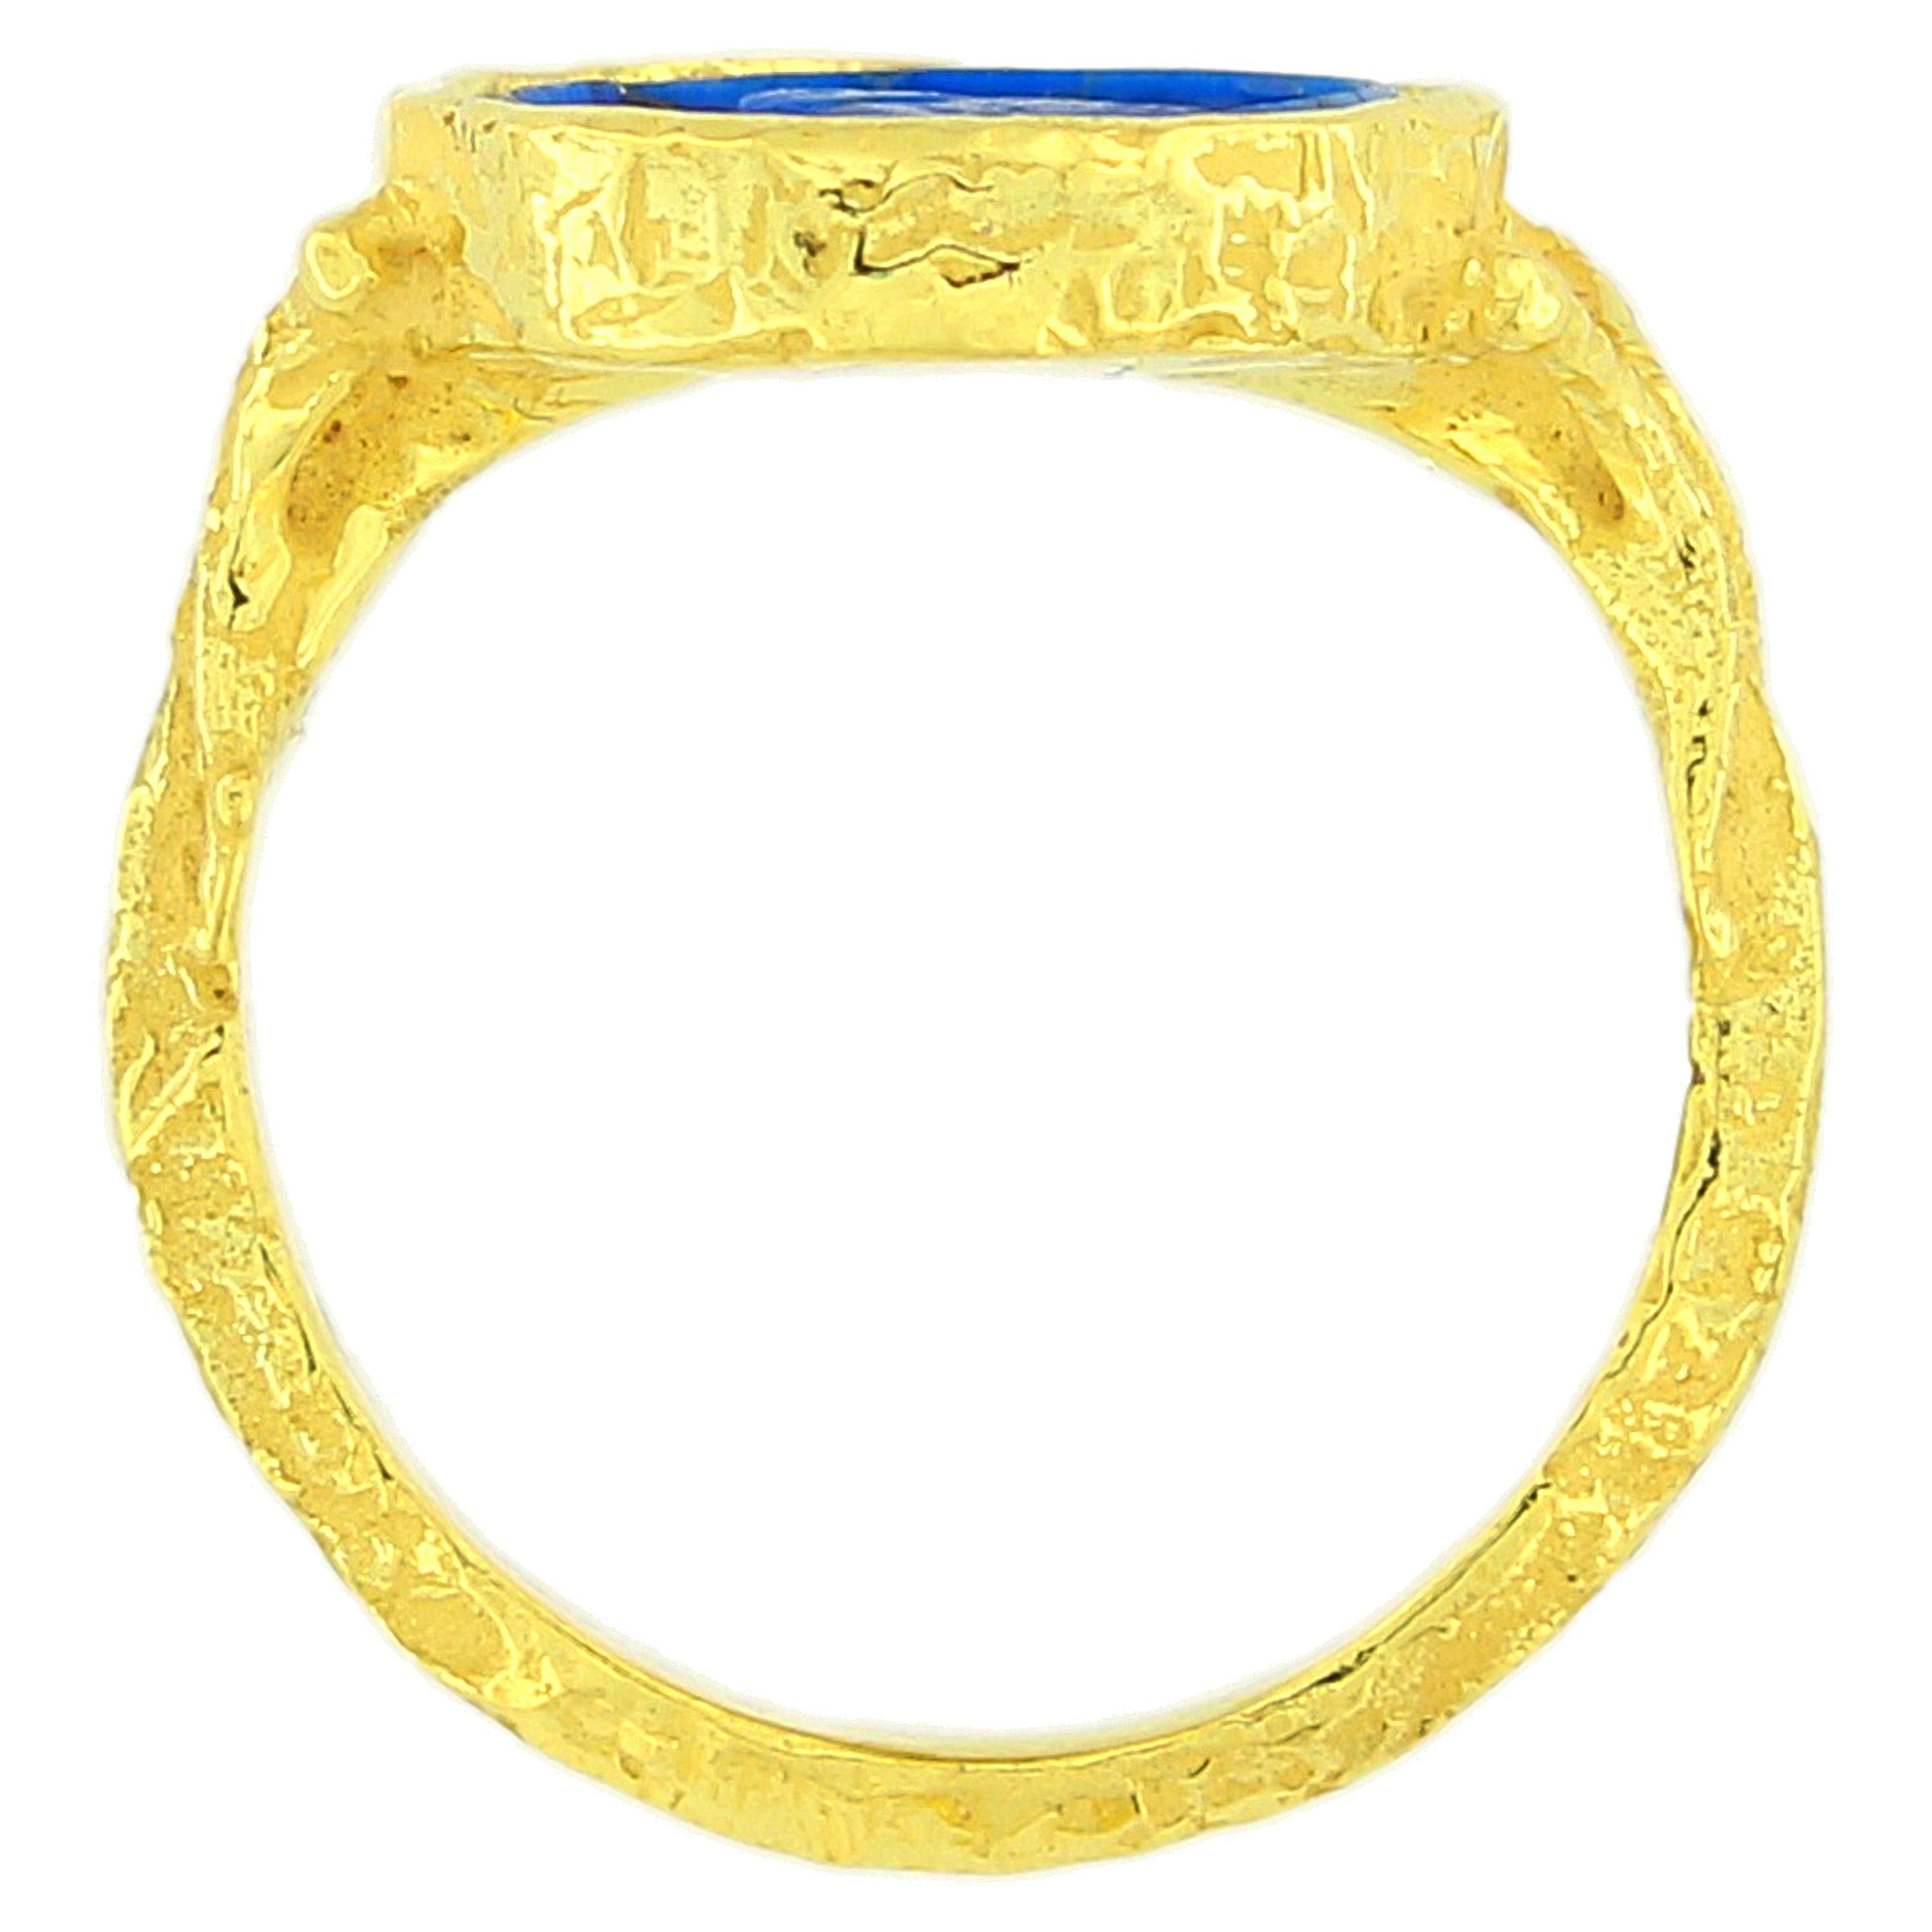 Classical Roman Sacchi Lapis Lazuli Cameo Ring 18 Karat Satin Yellow Gold